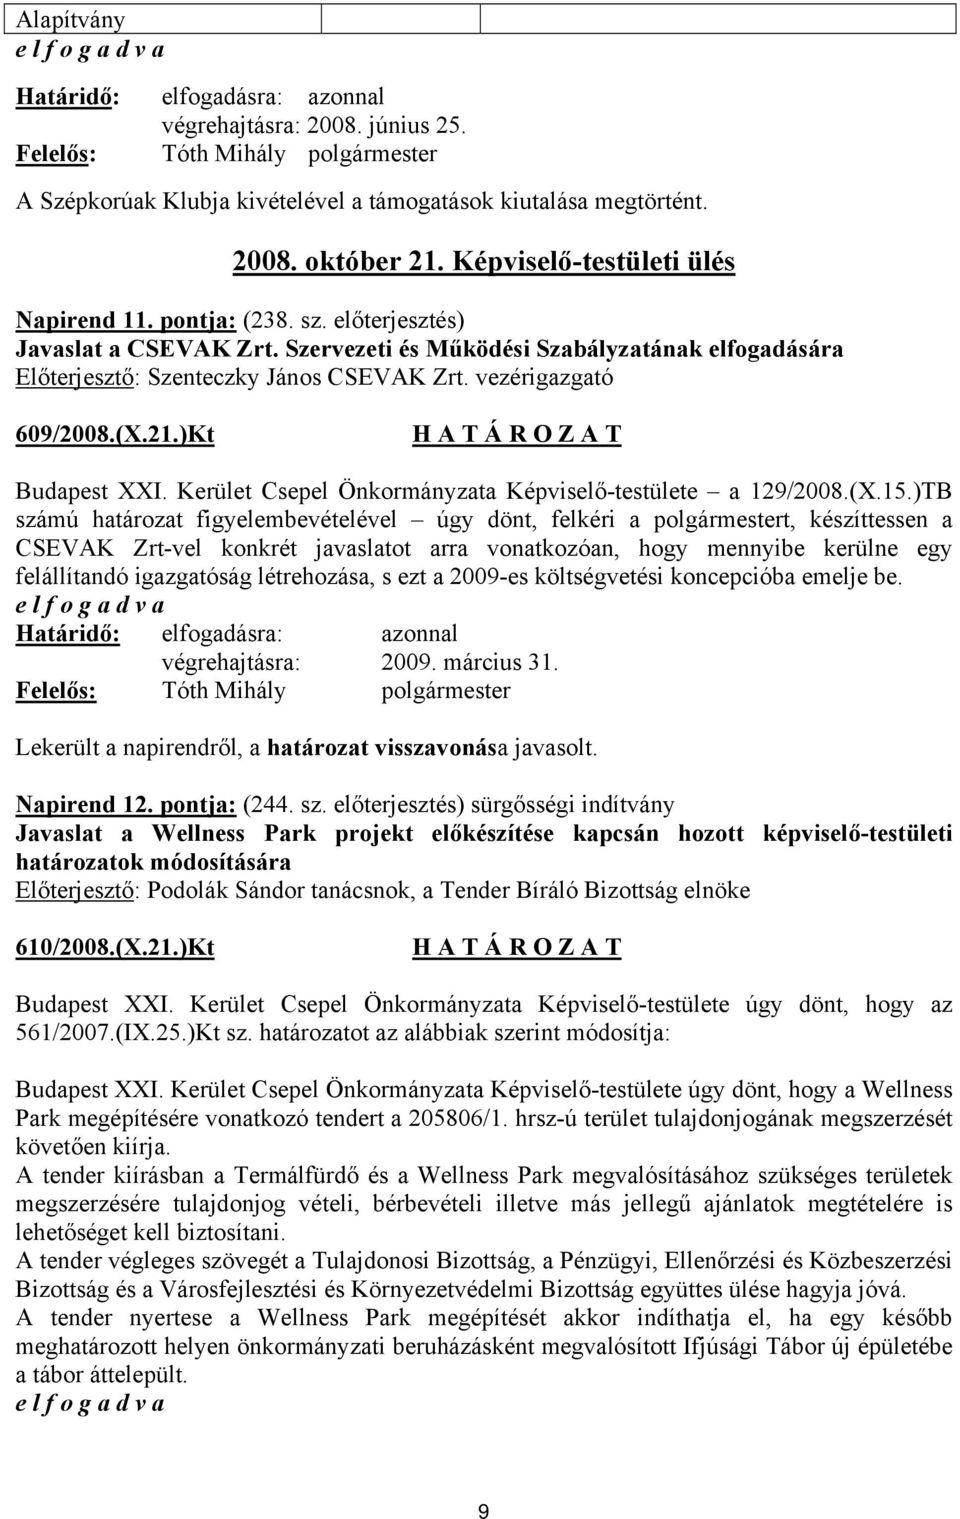 Kerület Csepel Önkormányzata Képviselő-testülete a 129/2008.(X.15.